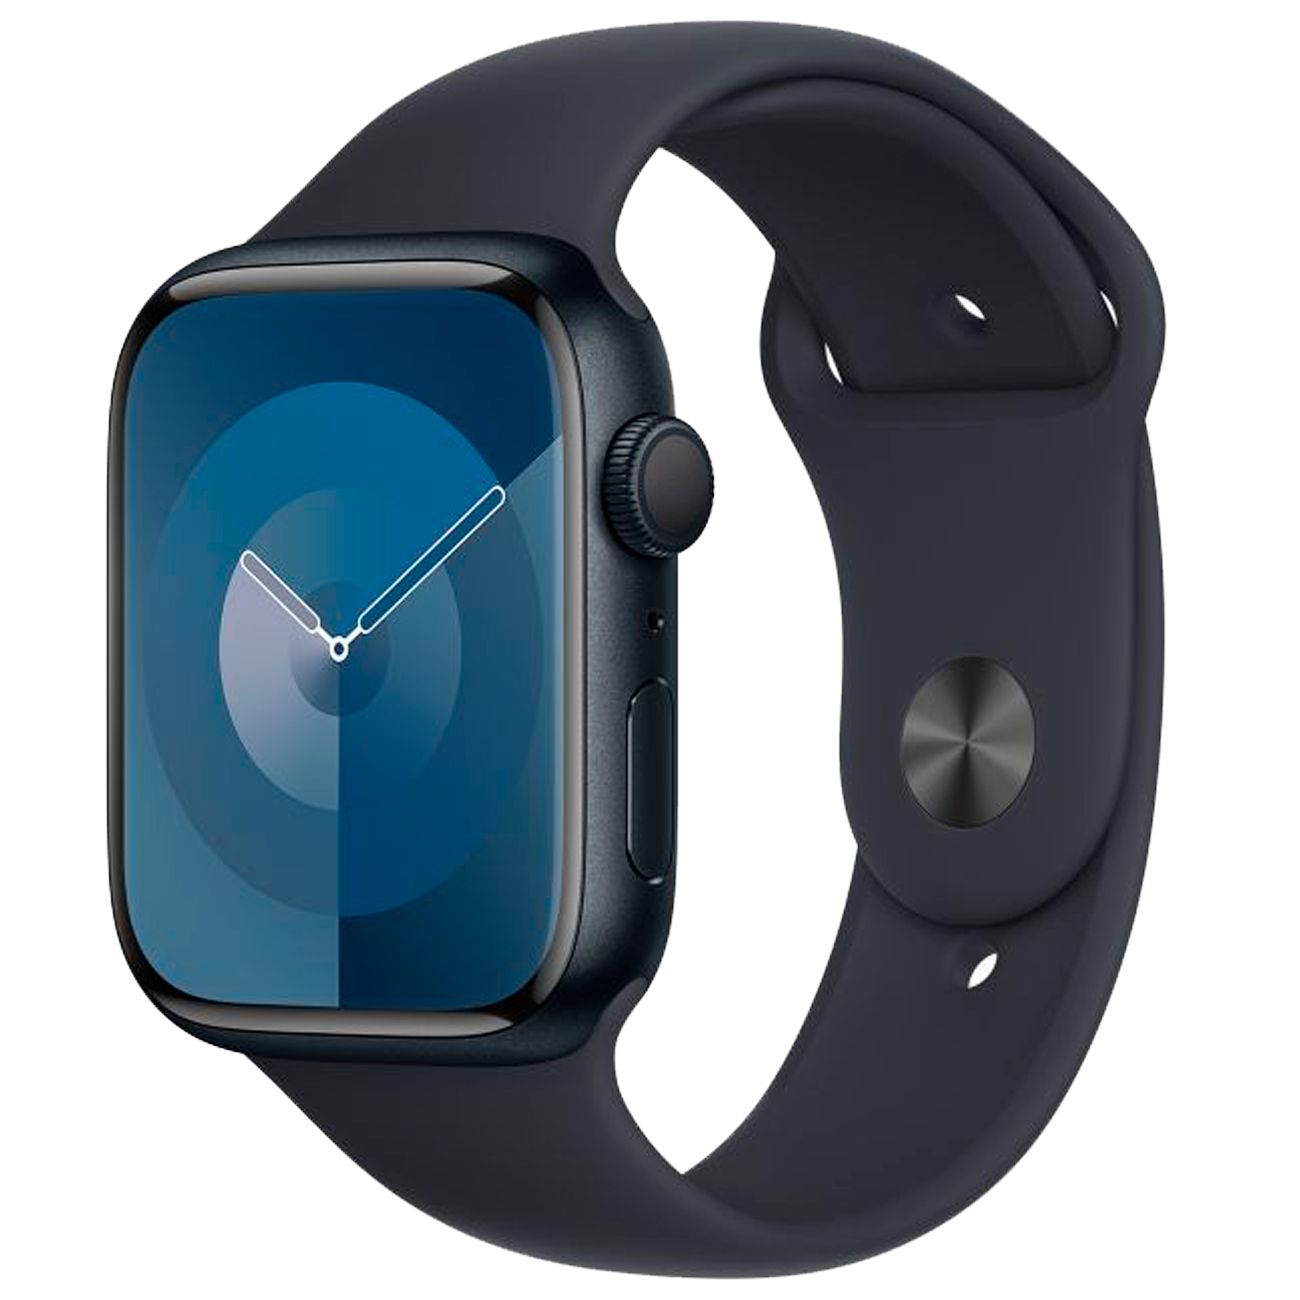 Смарт-часы Apple Watch S9 GPS 41mm Midnight Aluminium Case with Midnight Sport Band M/L, купить в Москве, цены в интернет-магазинах на Мегамаркет